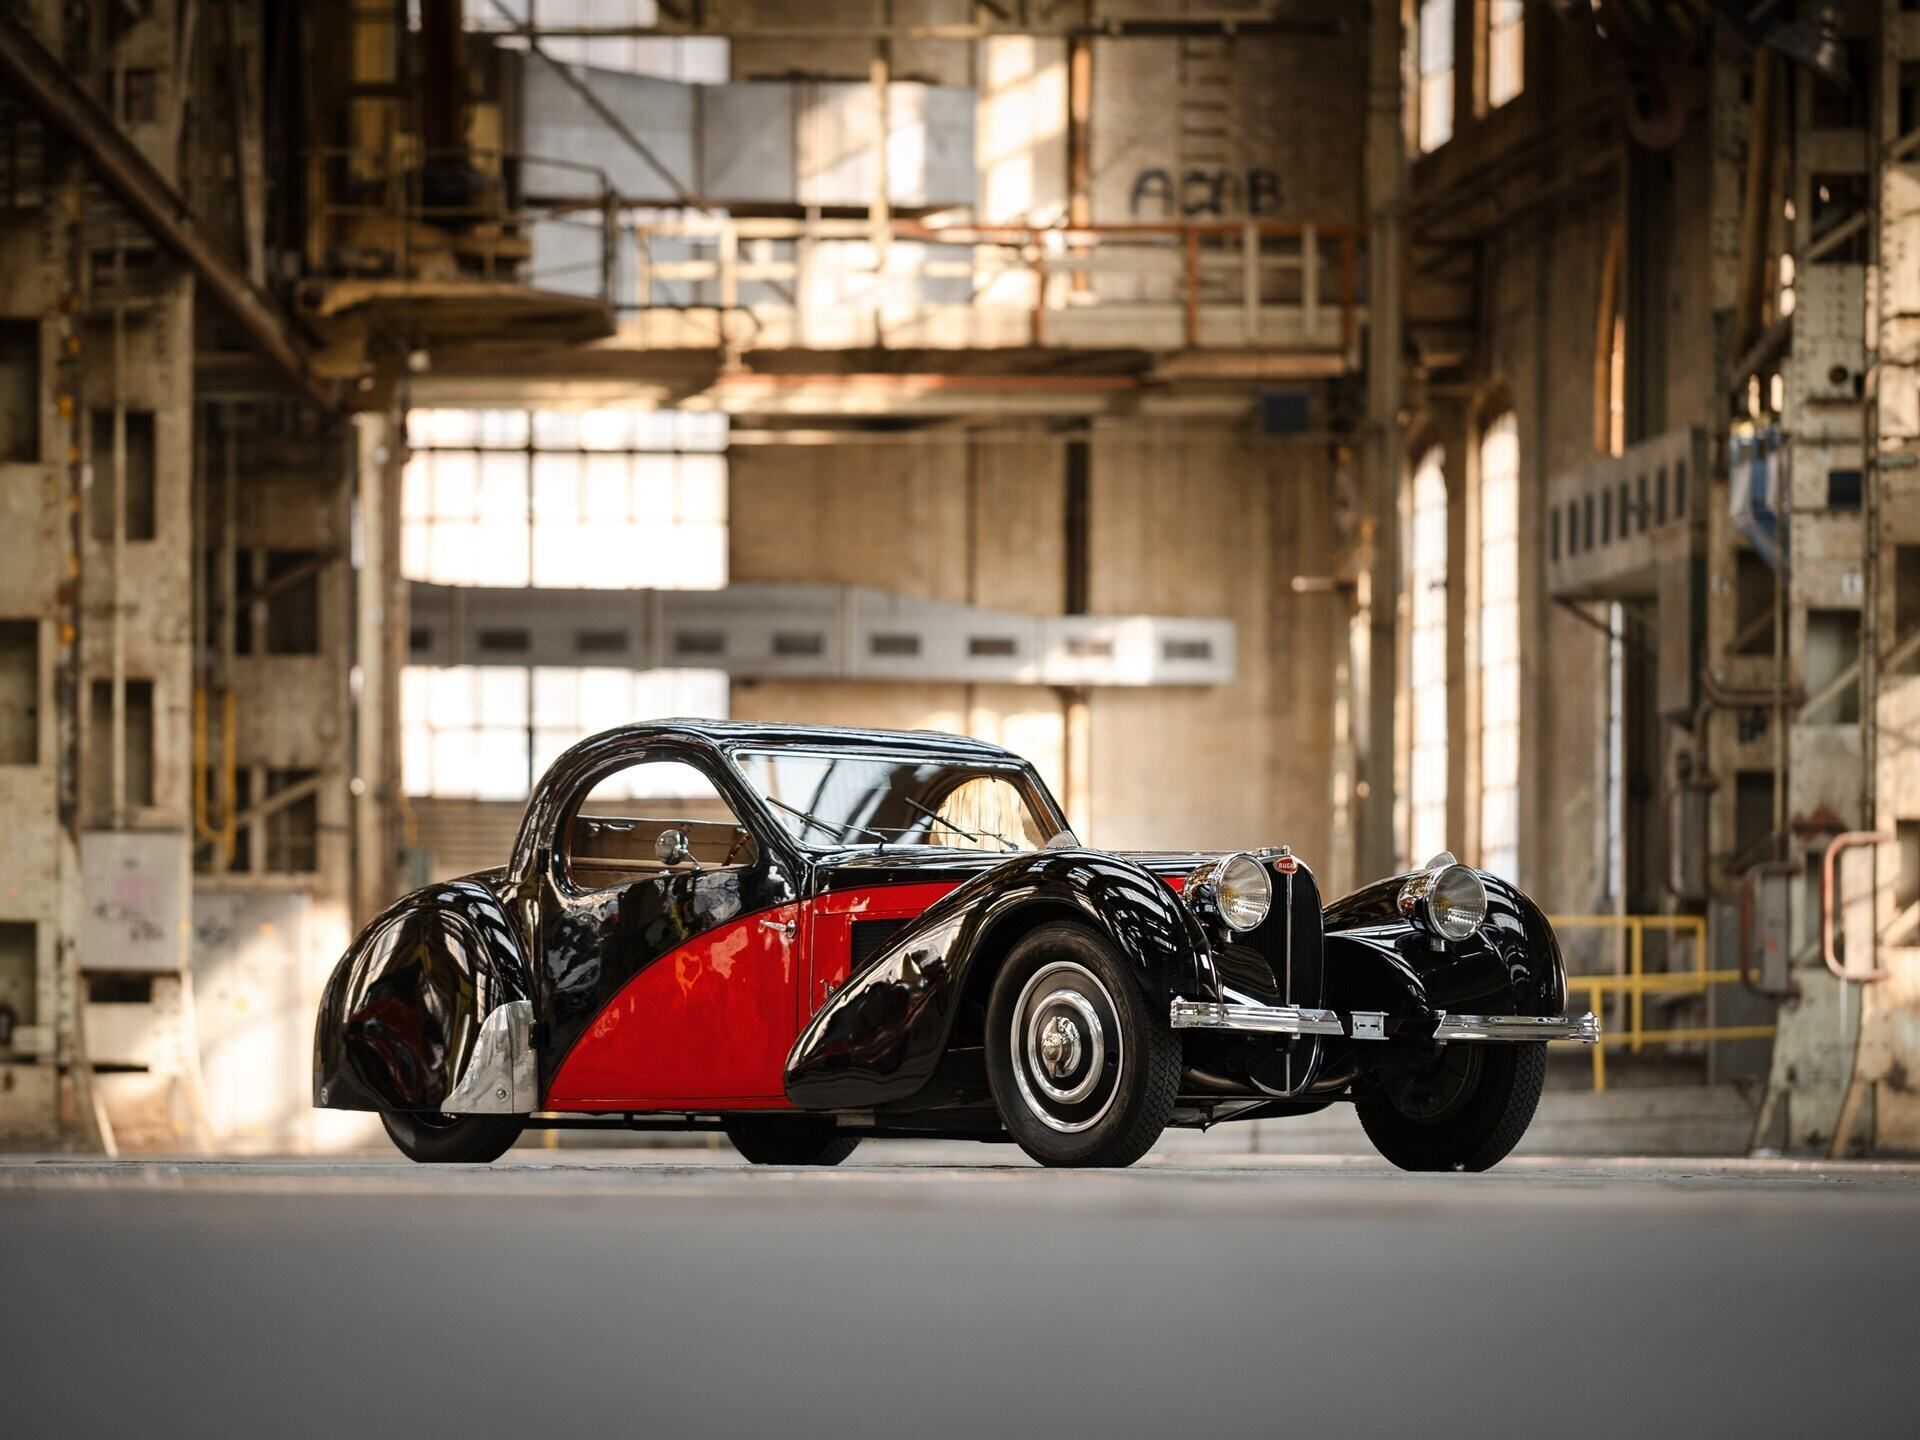 A rare Bugatti 575C Atlantic